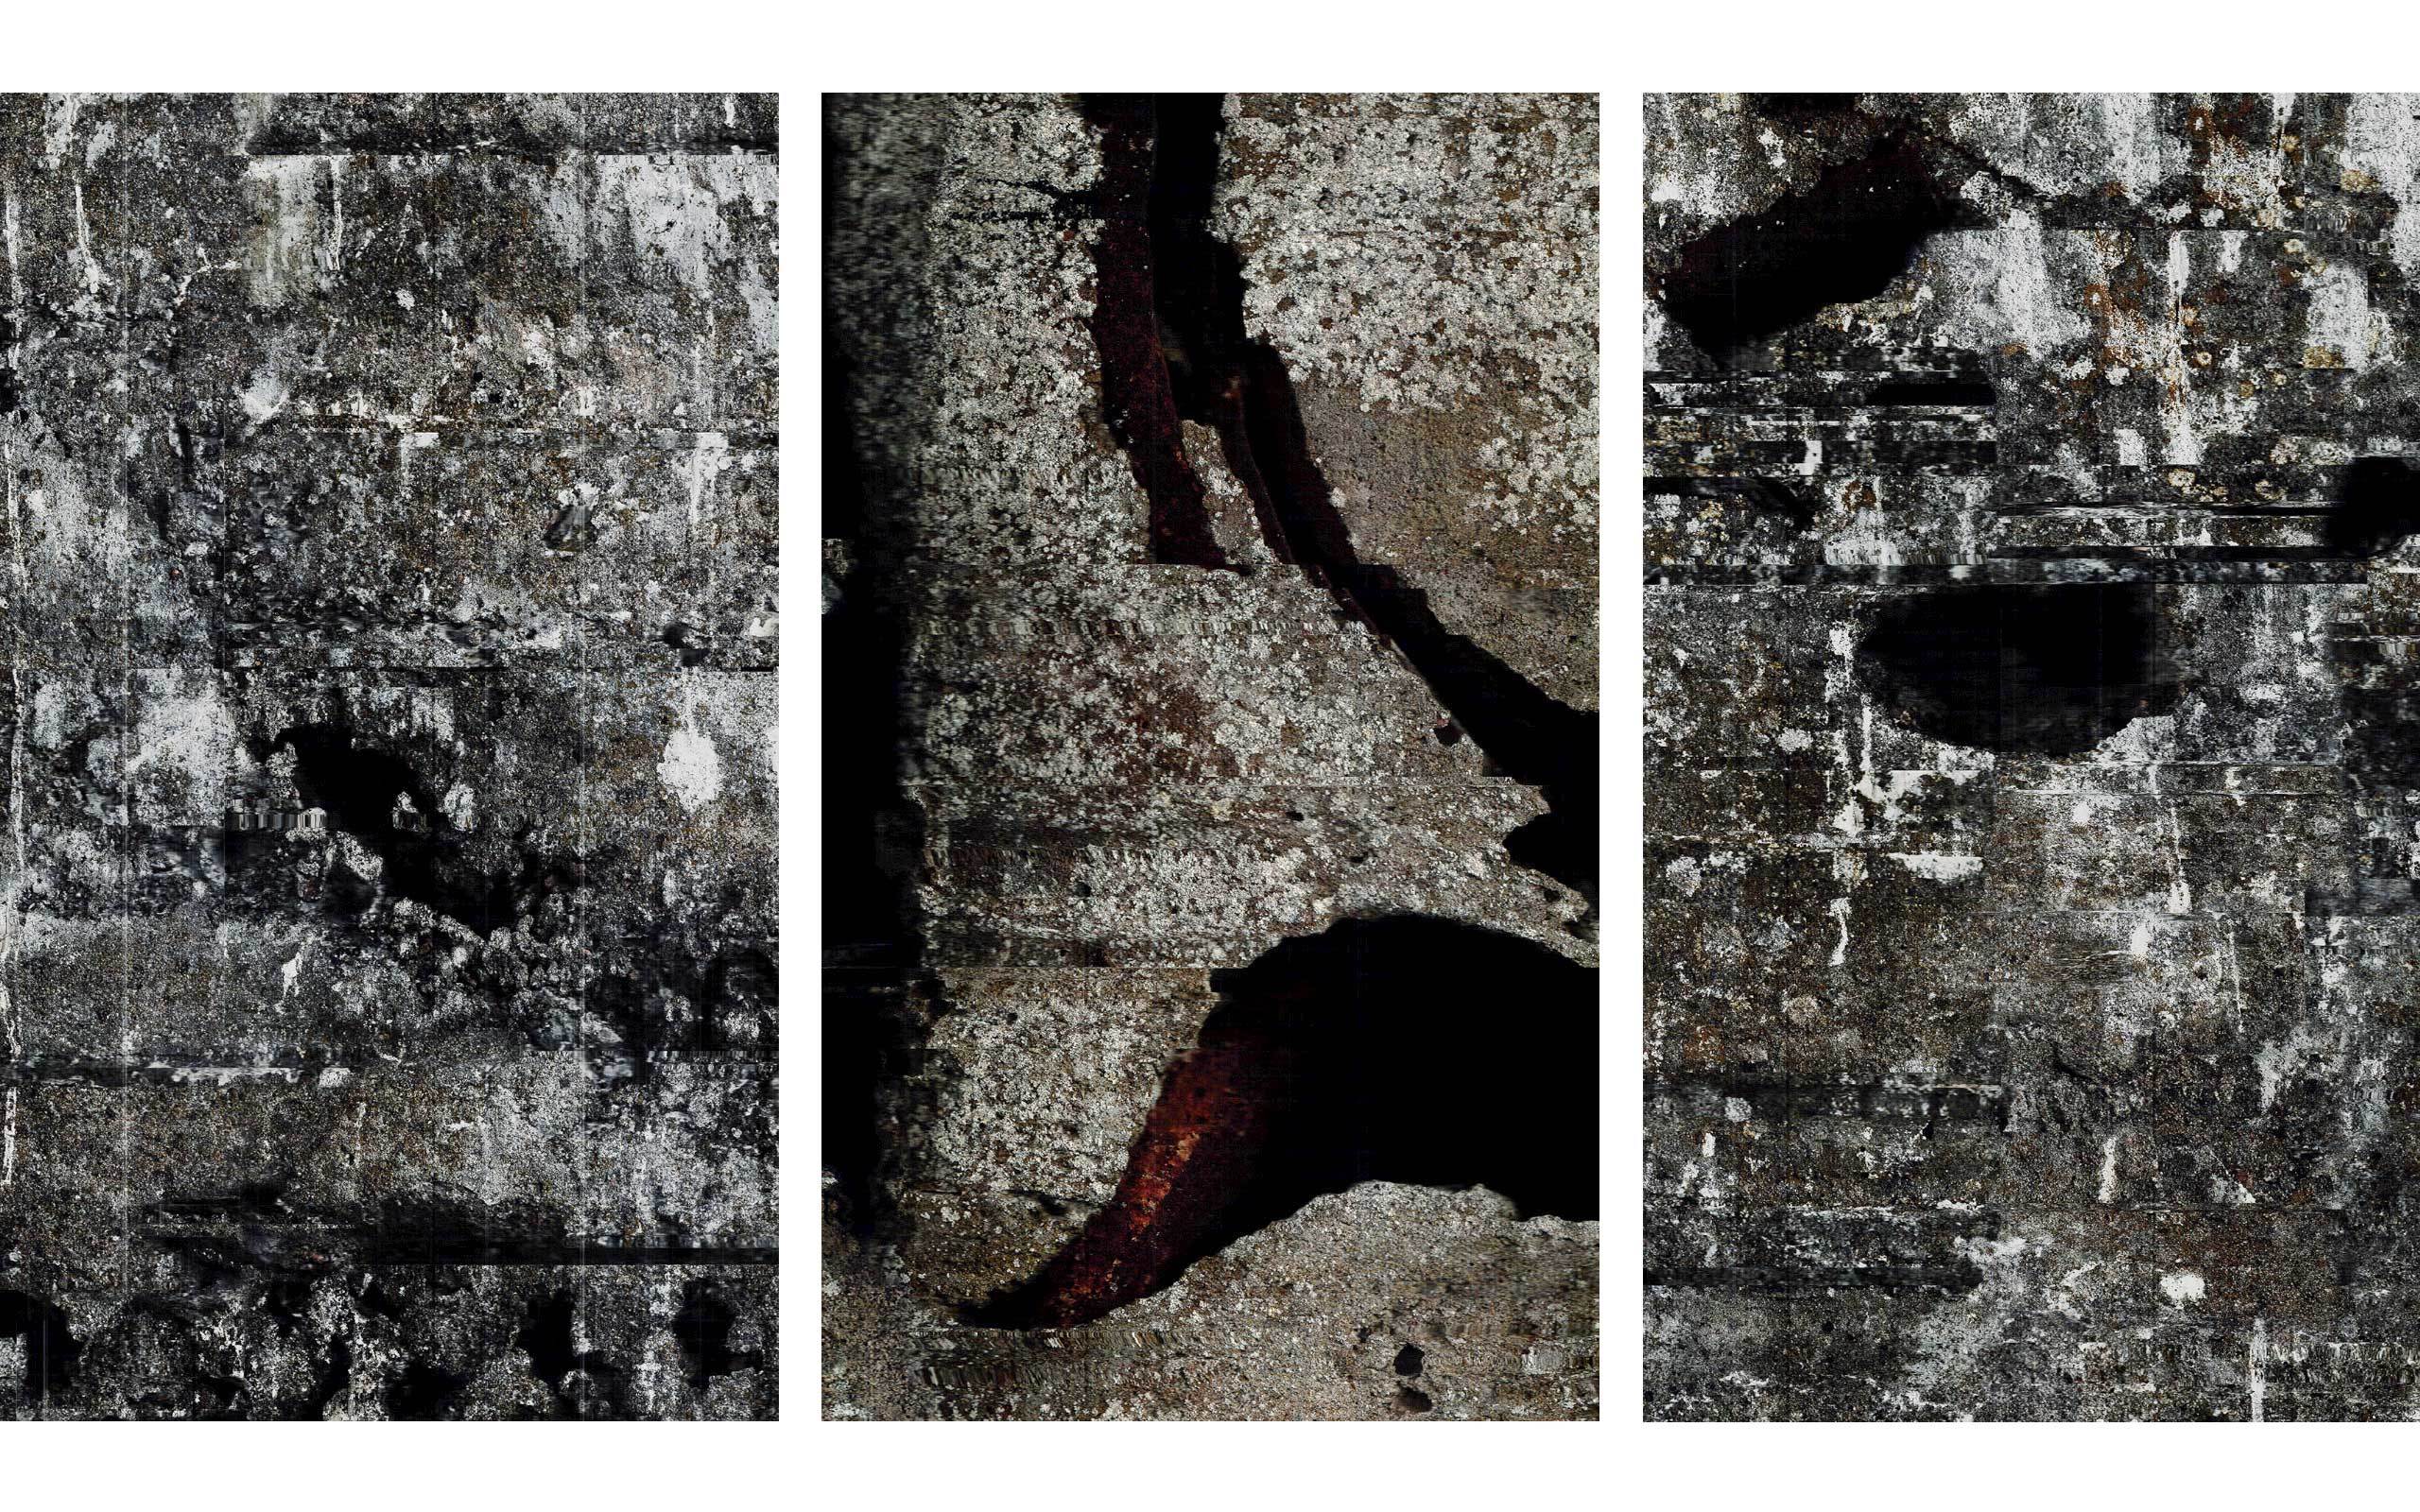 01 John Skoog limited-release art edition (Rift 1) South Wall; (Rift 2) North Wall; (Rift 3) South Wall